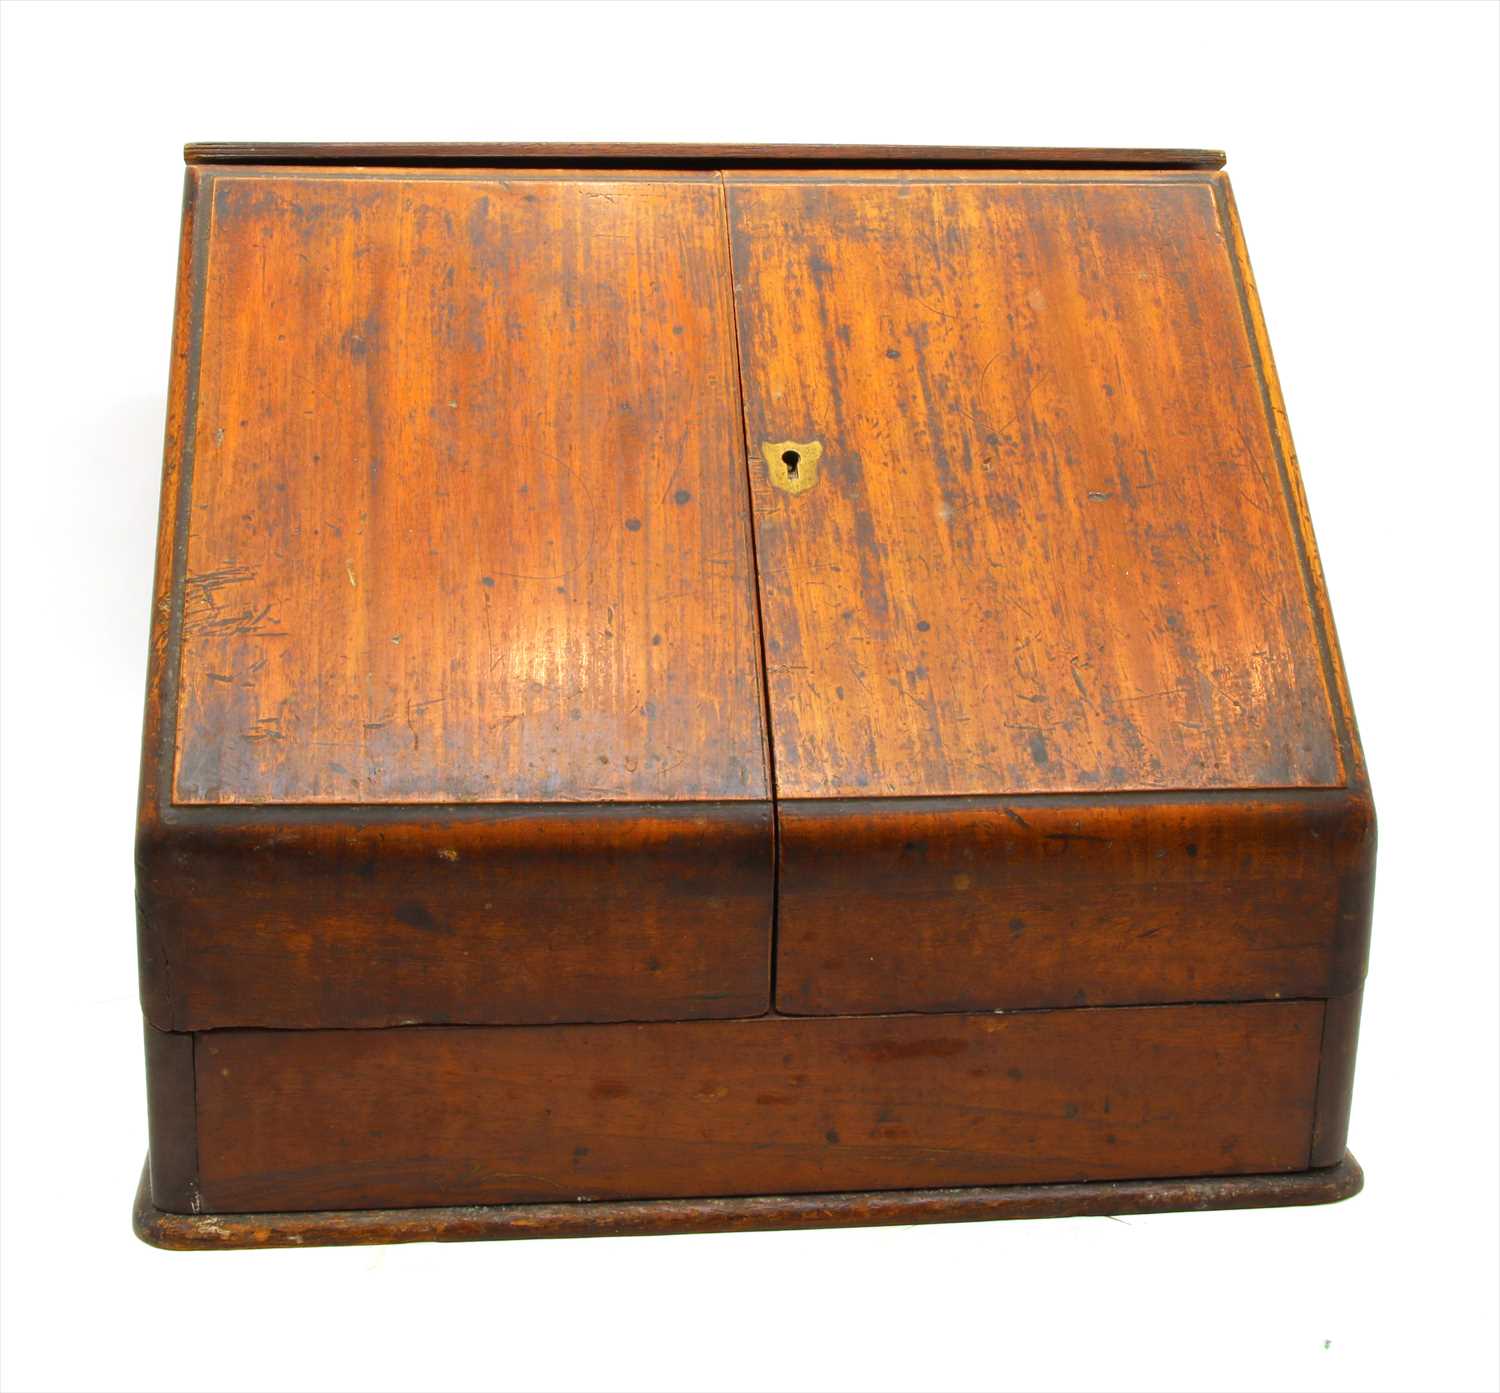 Lot 184 - A mahogany stationery box